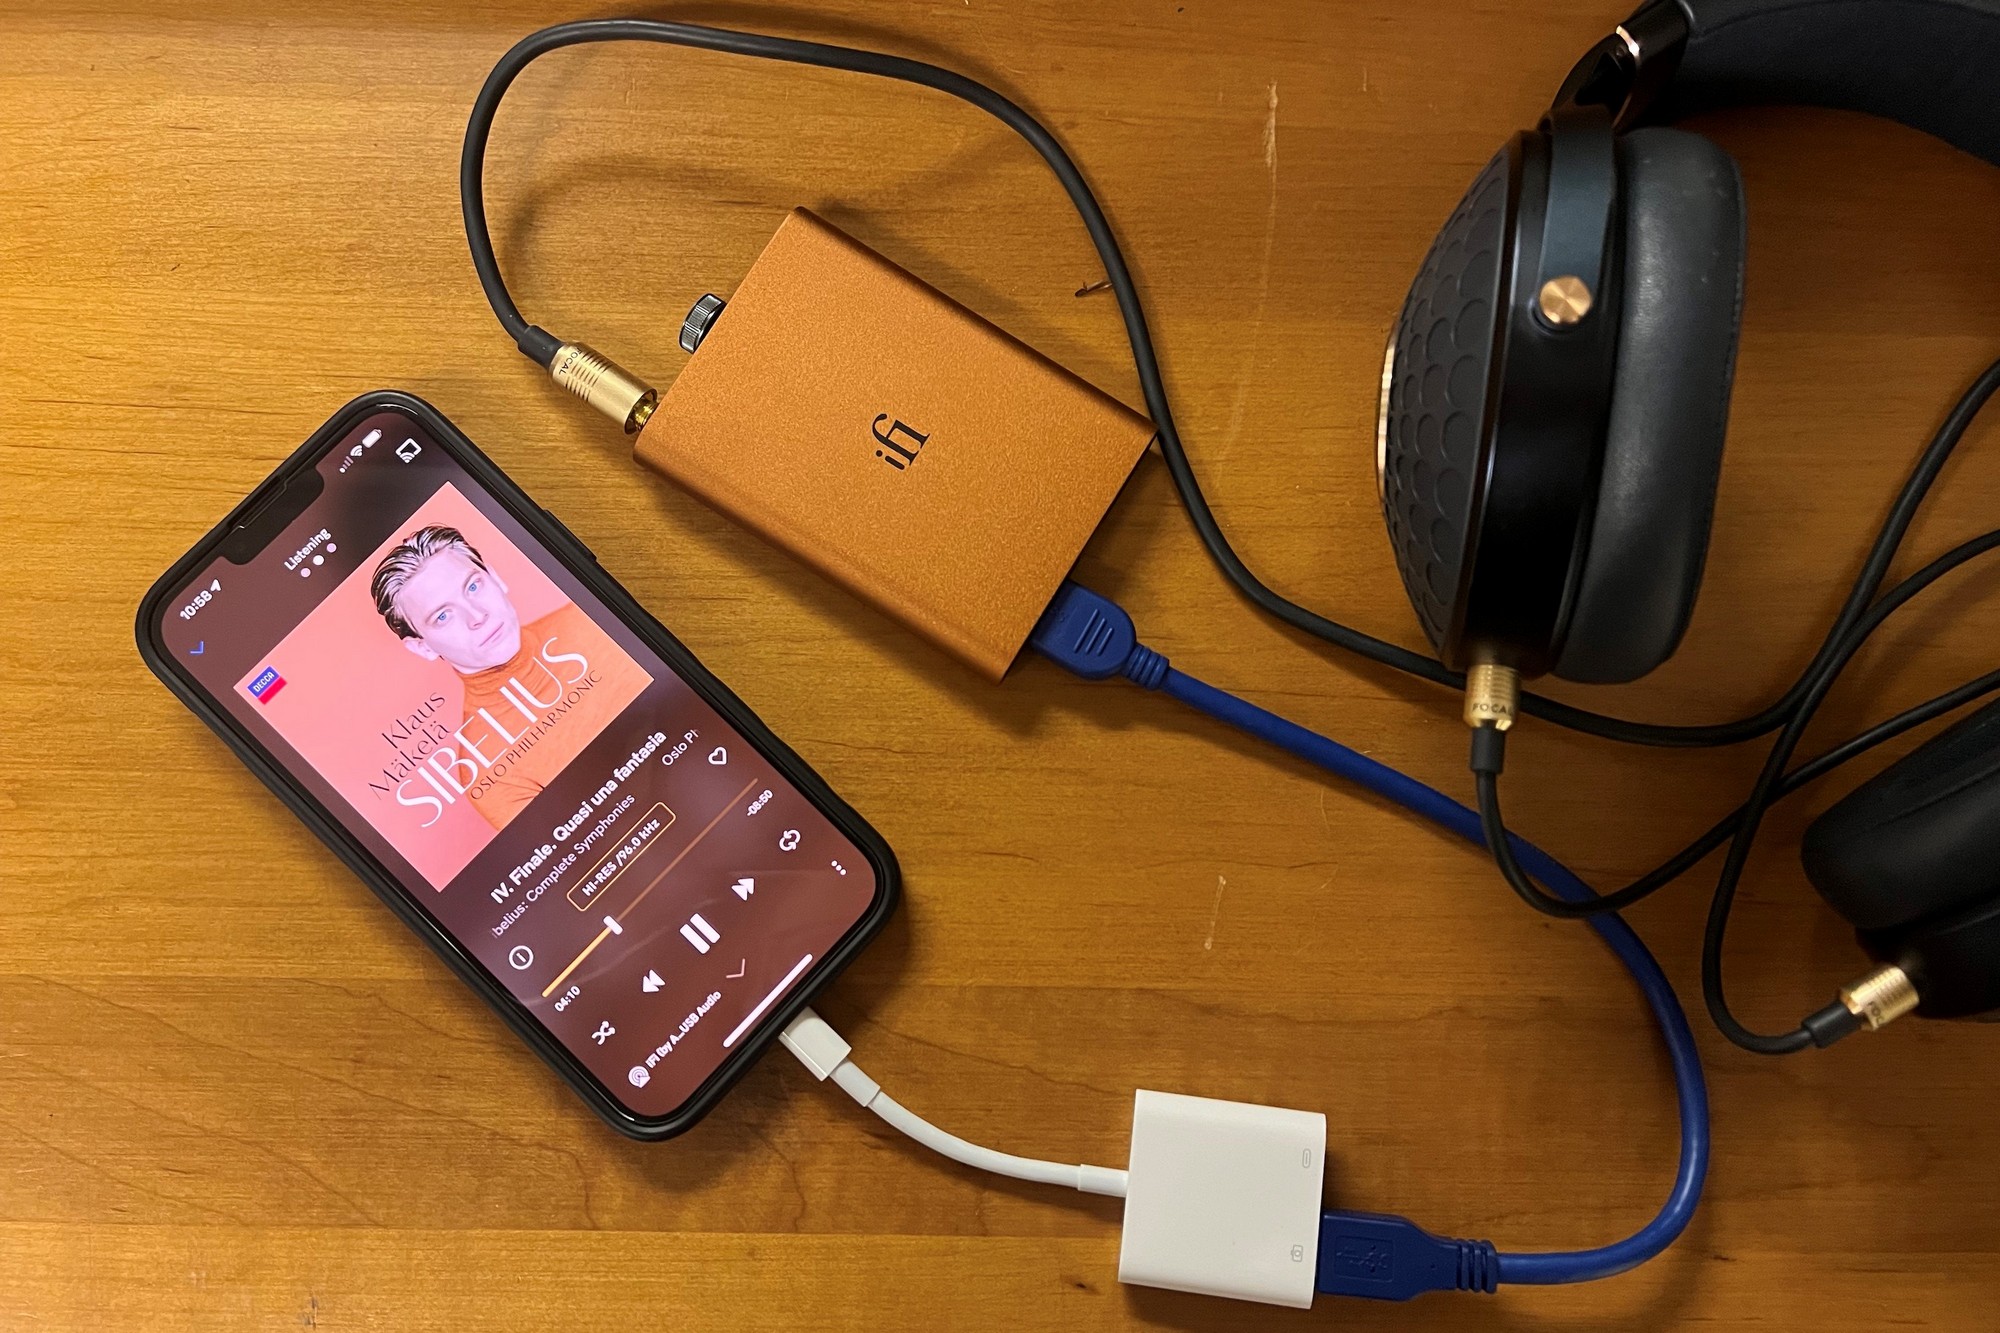 オーディオ機器 アンプ iFi hip-dac2 review: An essential headphone amp/DAC for high-res 